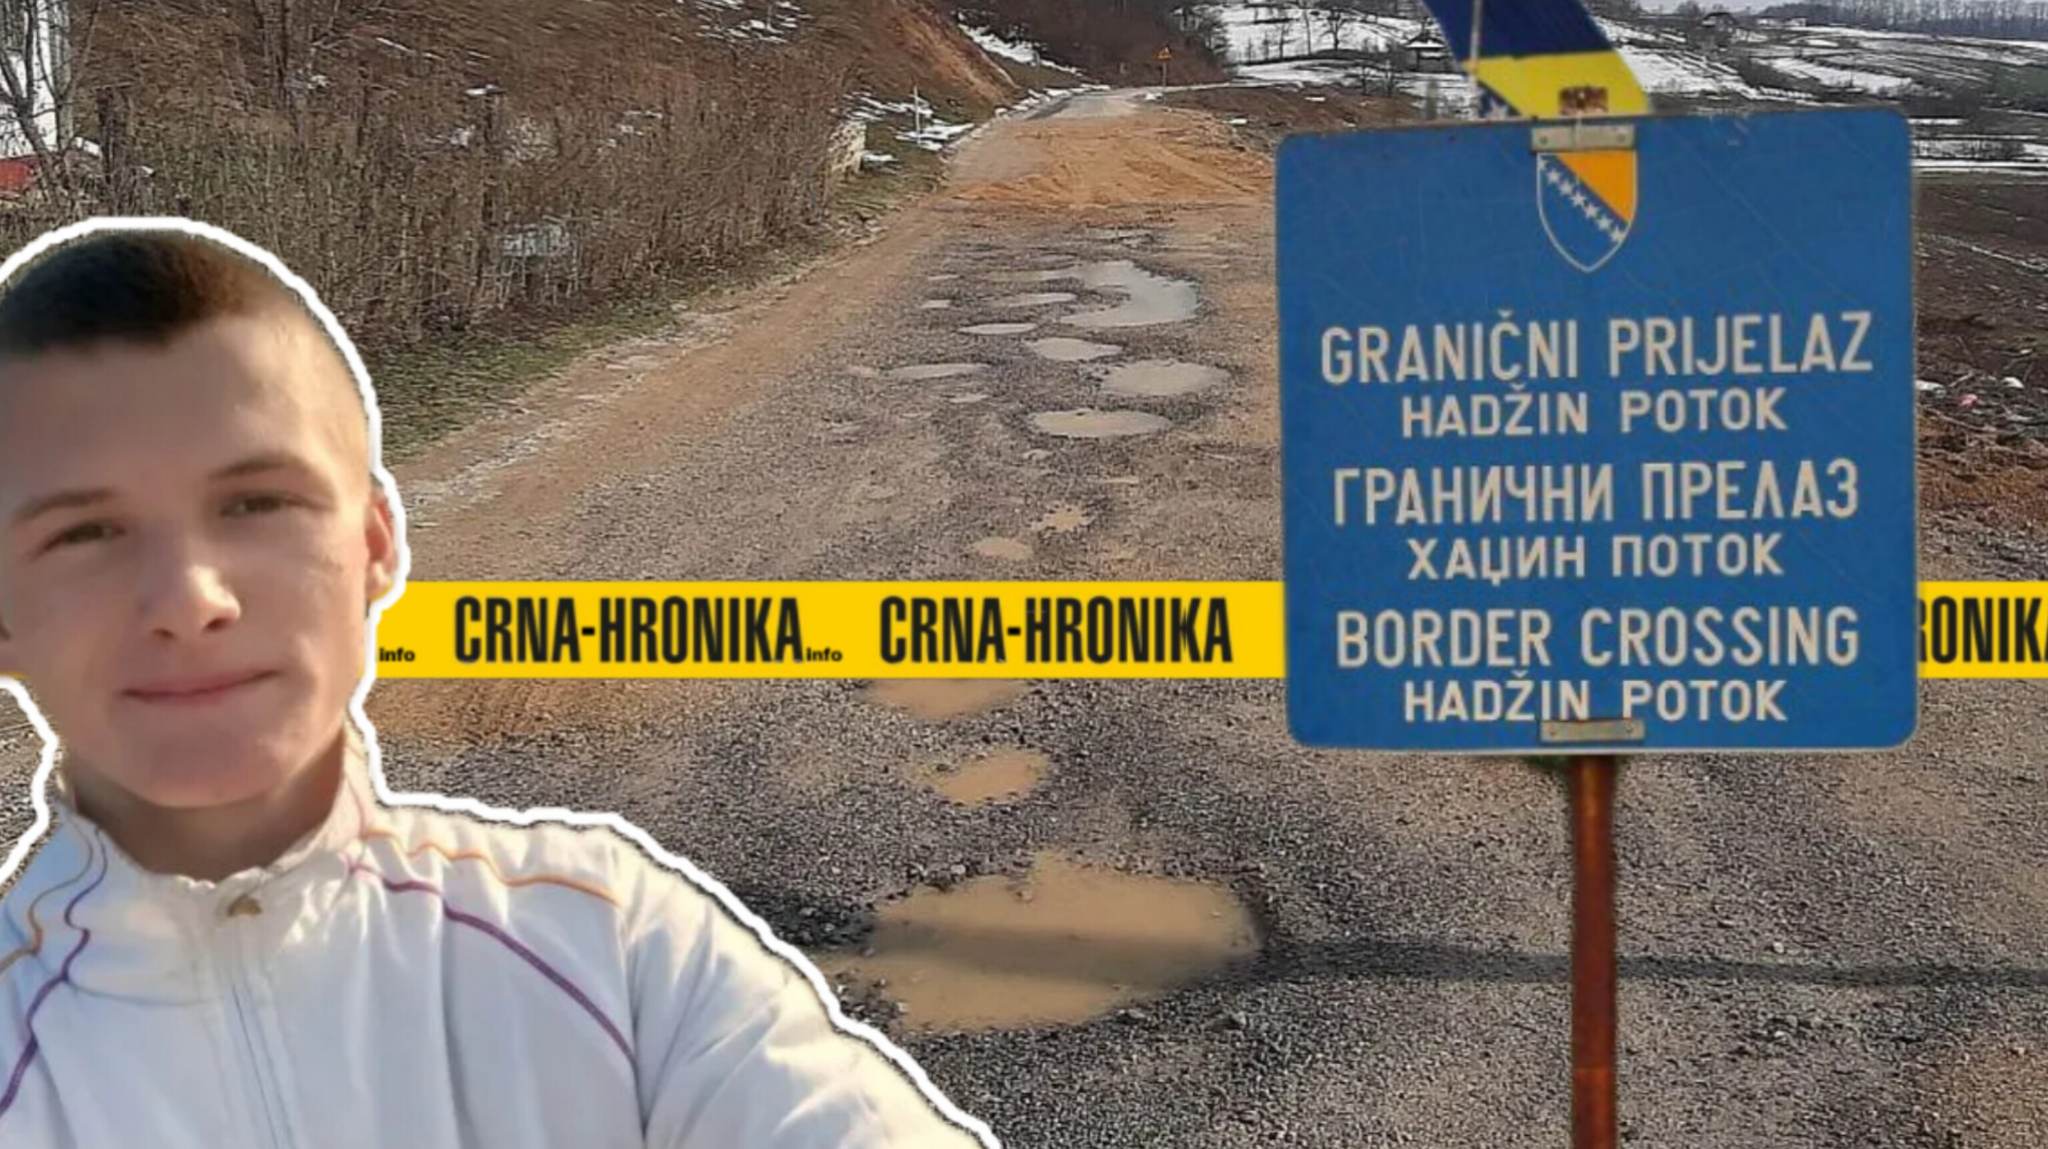 15-godišnji Enes sa bratom uređuje put prema granici. “Popravlja rupe na državnoj cesti” | Crna hronika BiH